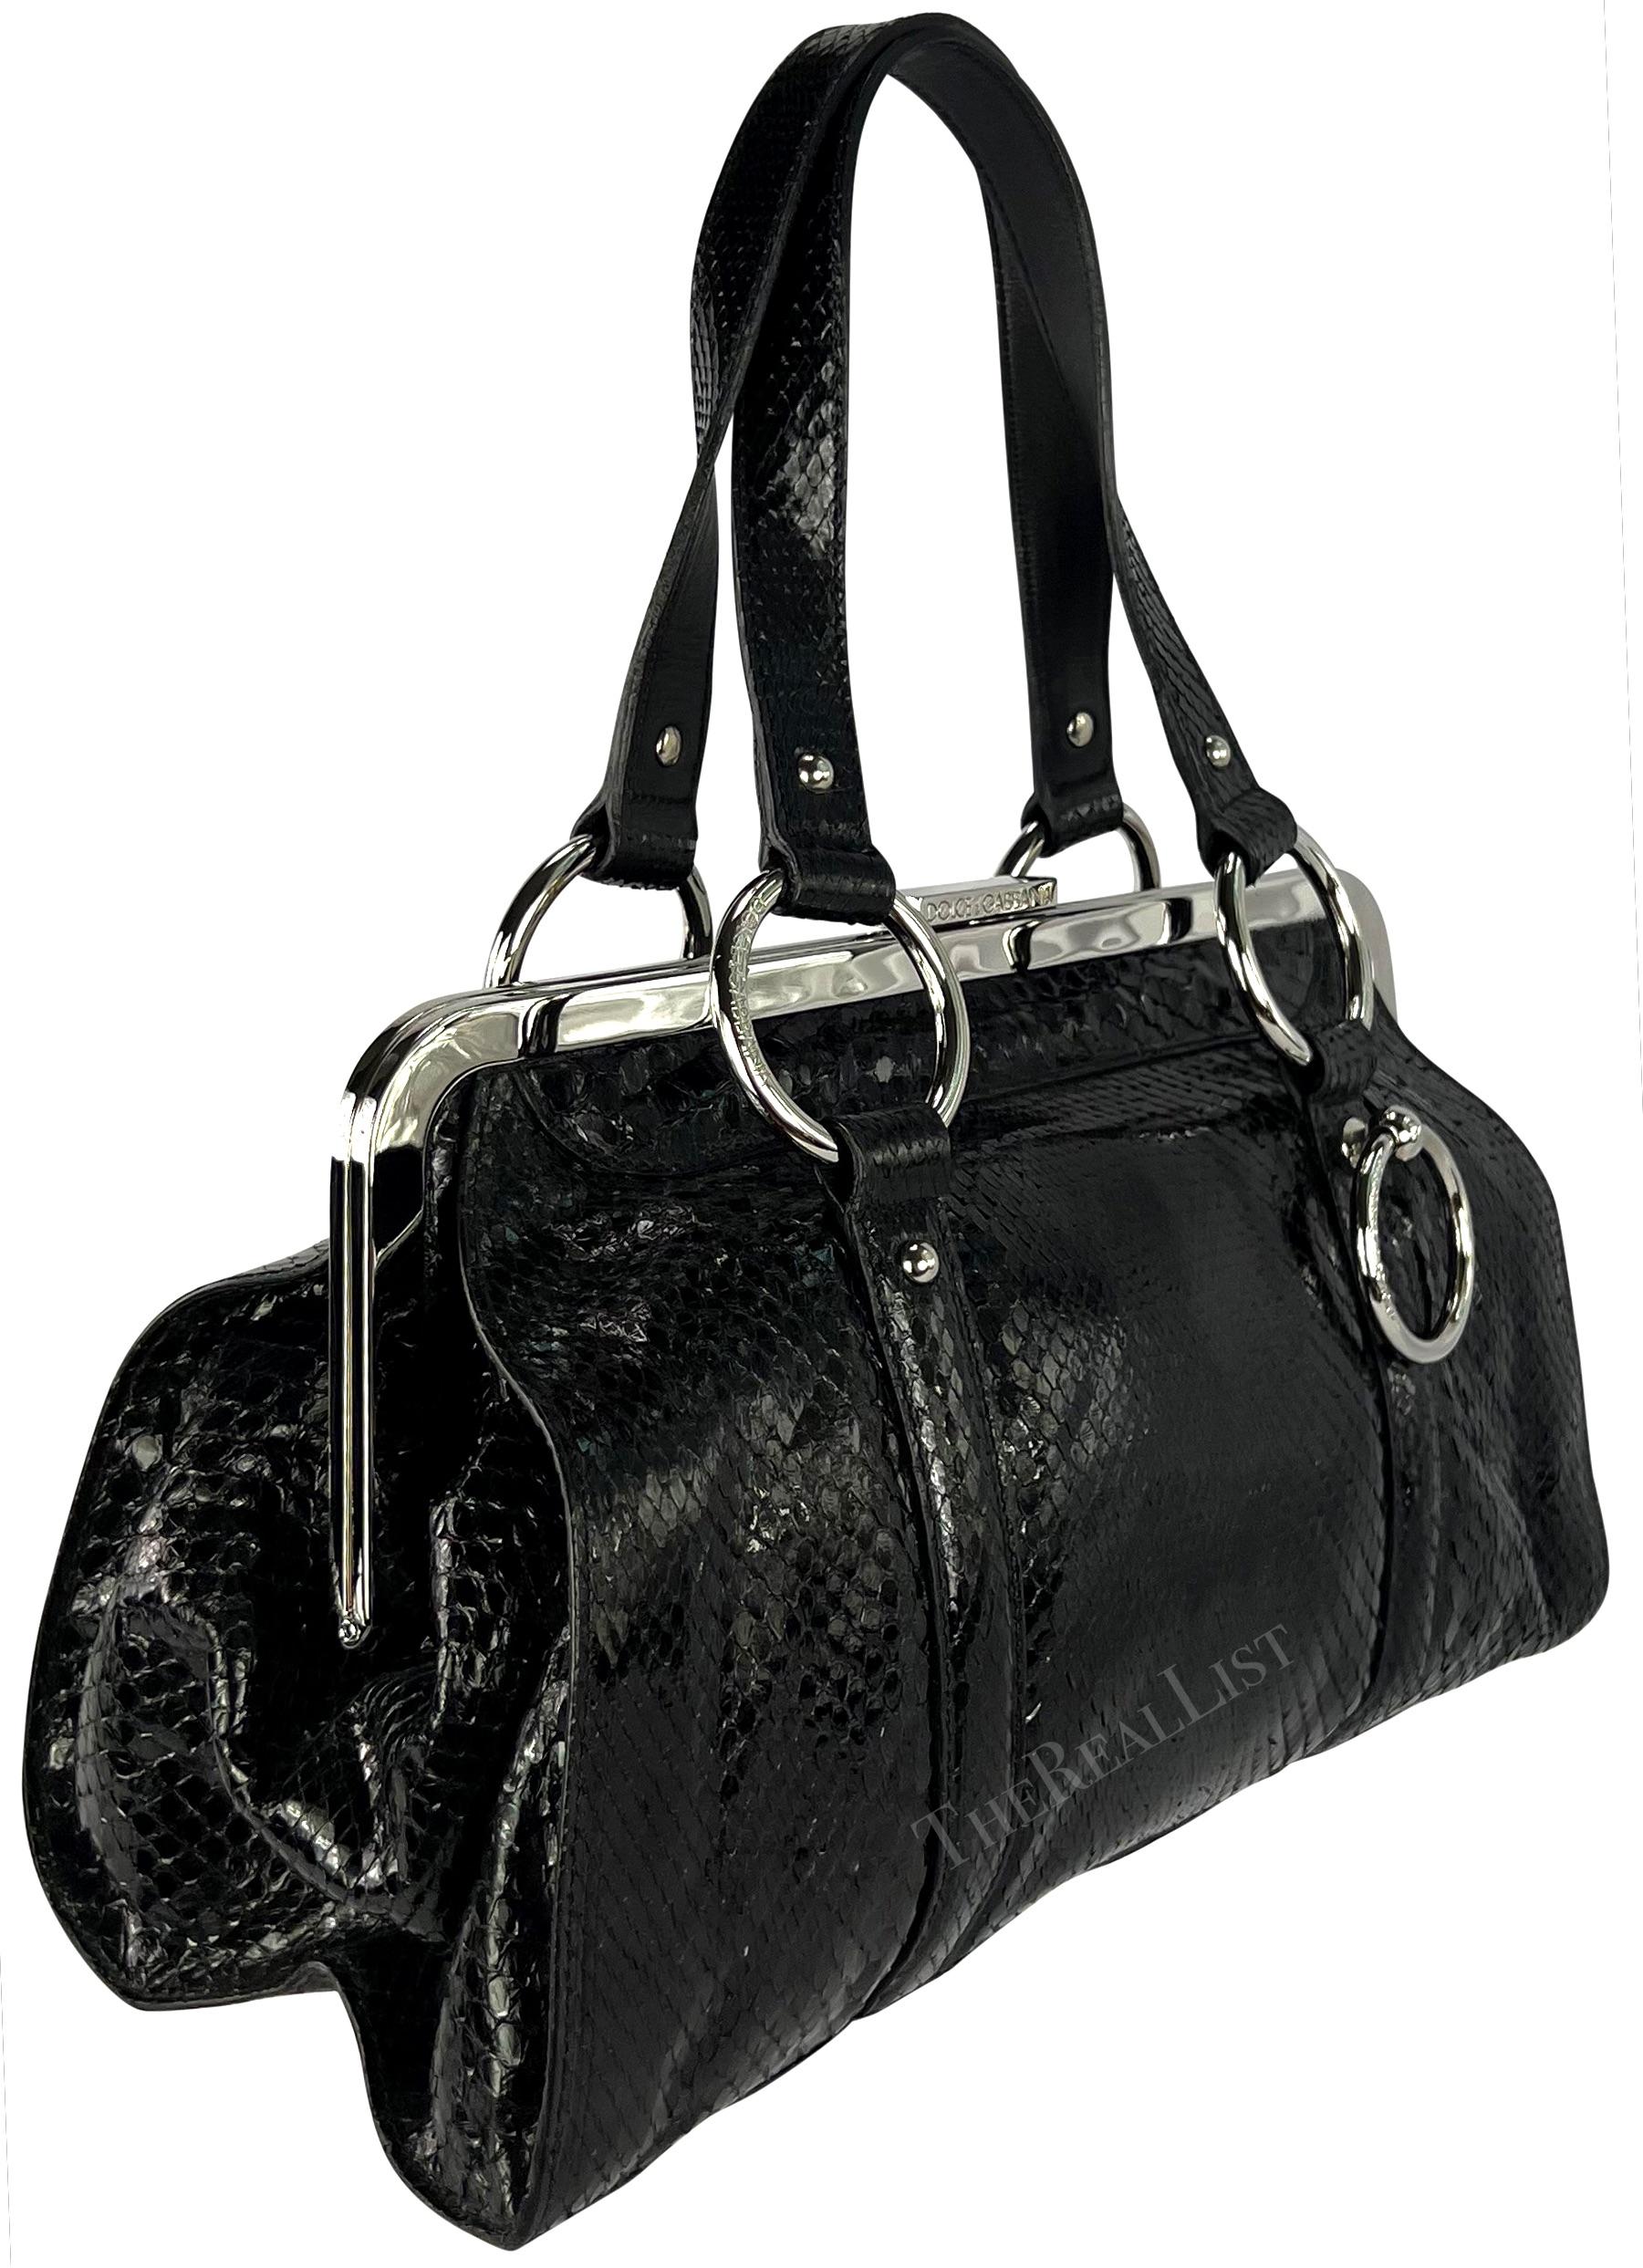 S/S 2003 Dolce & Gabbana Runway Black Python Leather Ring Shoulder Bag For Sale 7